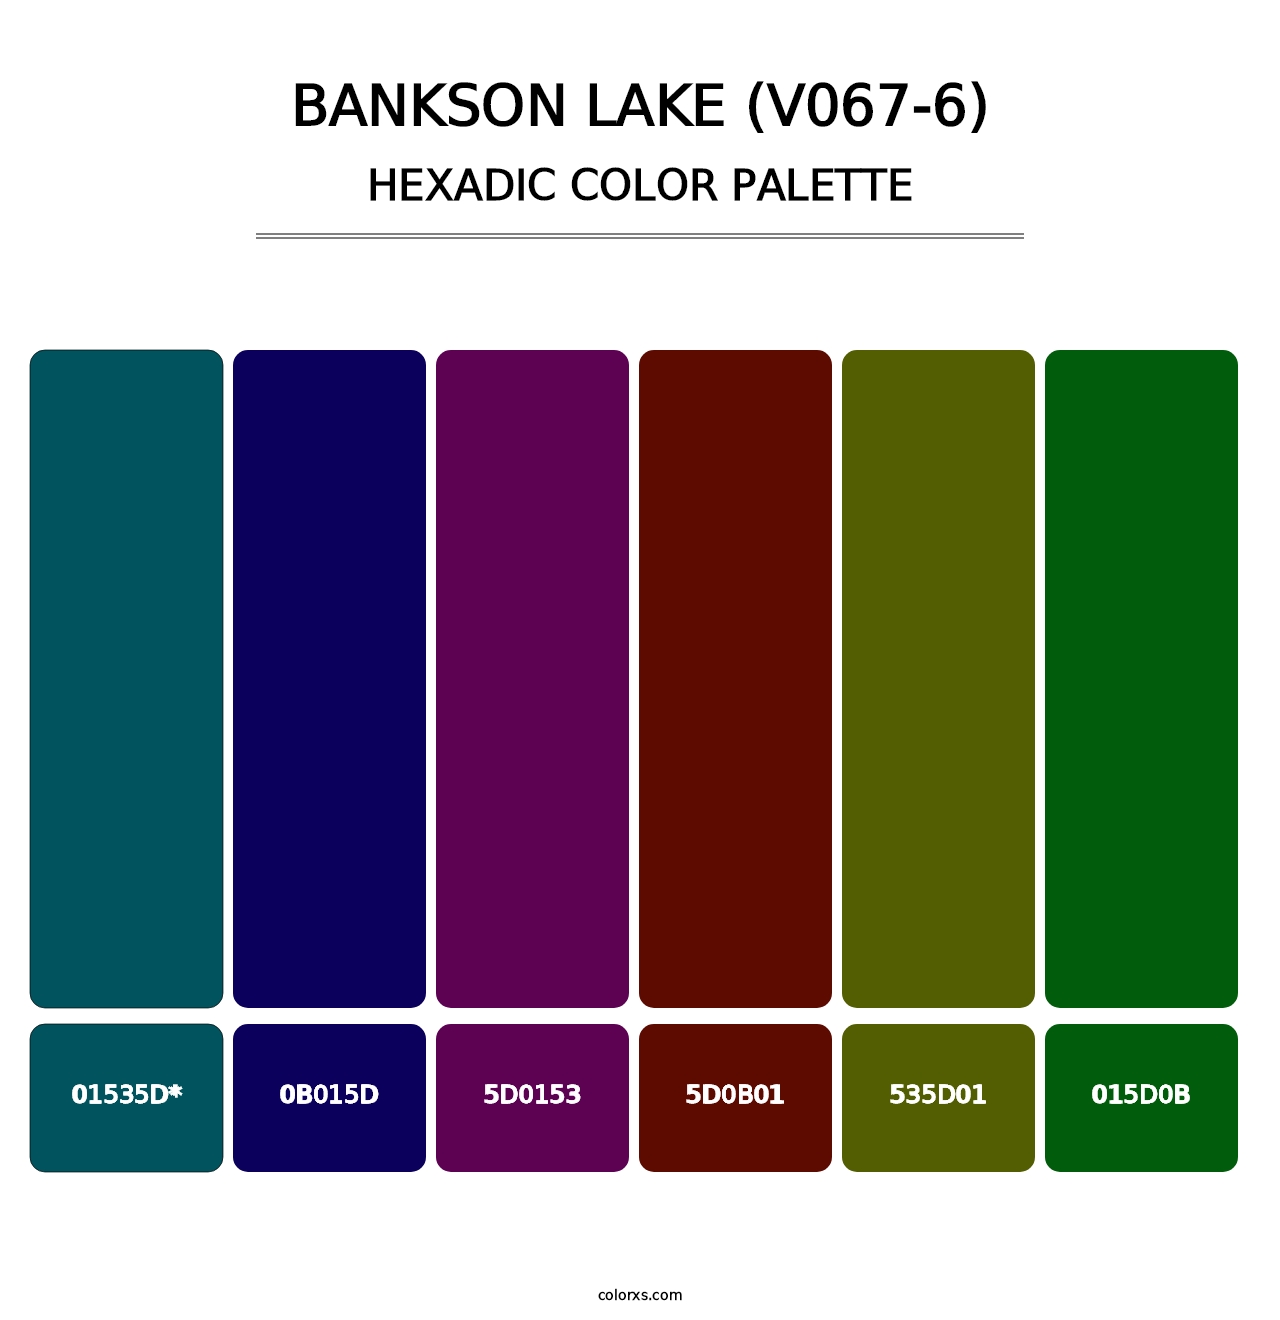 Bankson Lake (V067-6) - Hexadic Color Palette